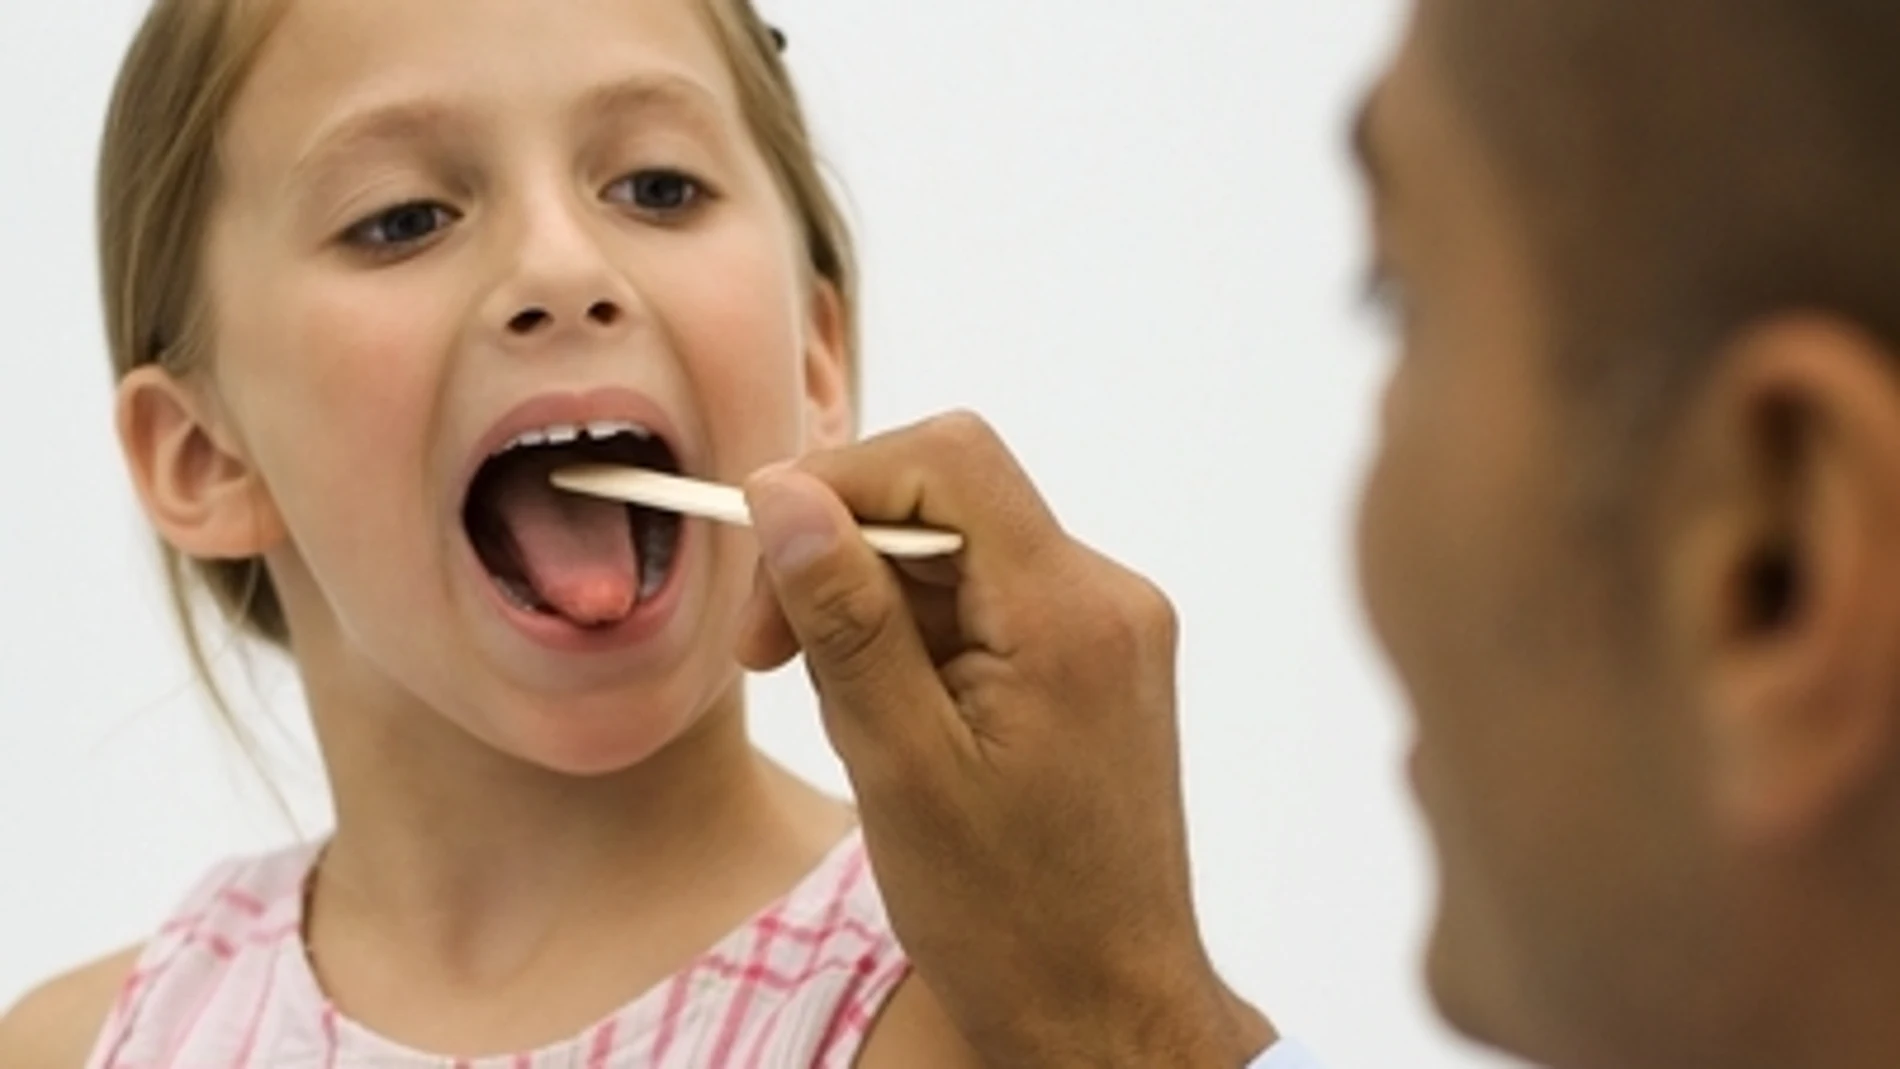 Doctor examina la garganta de una niña | Fuente: Altopress